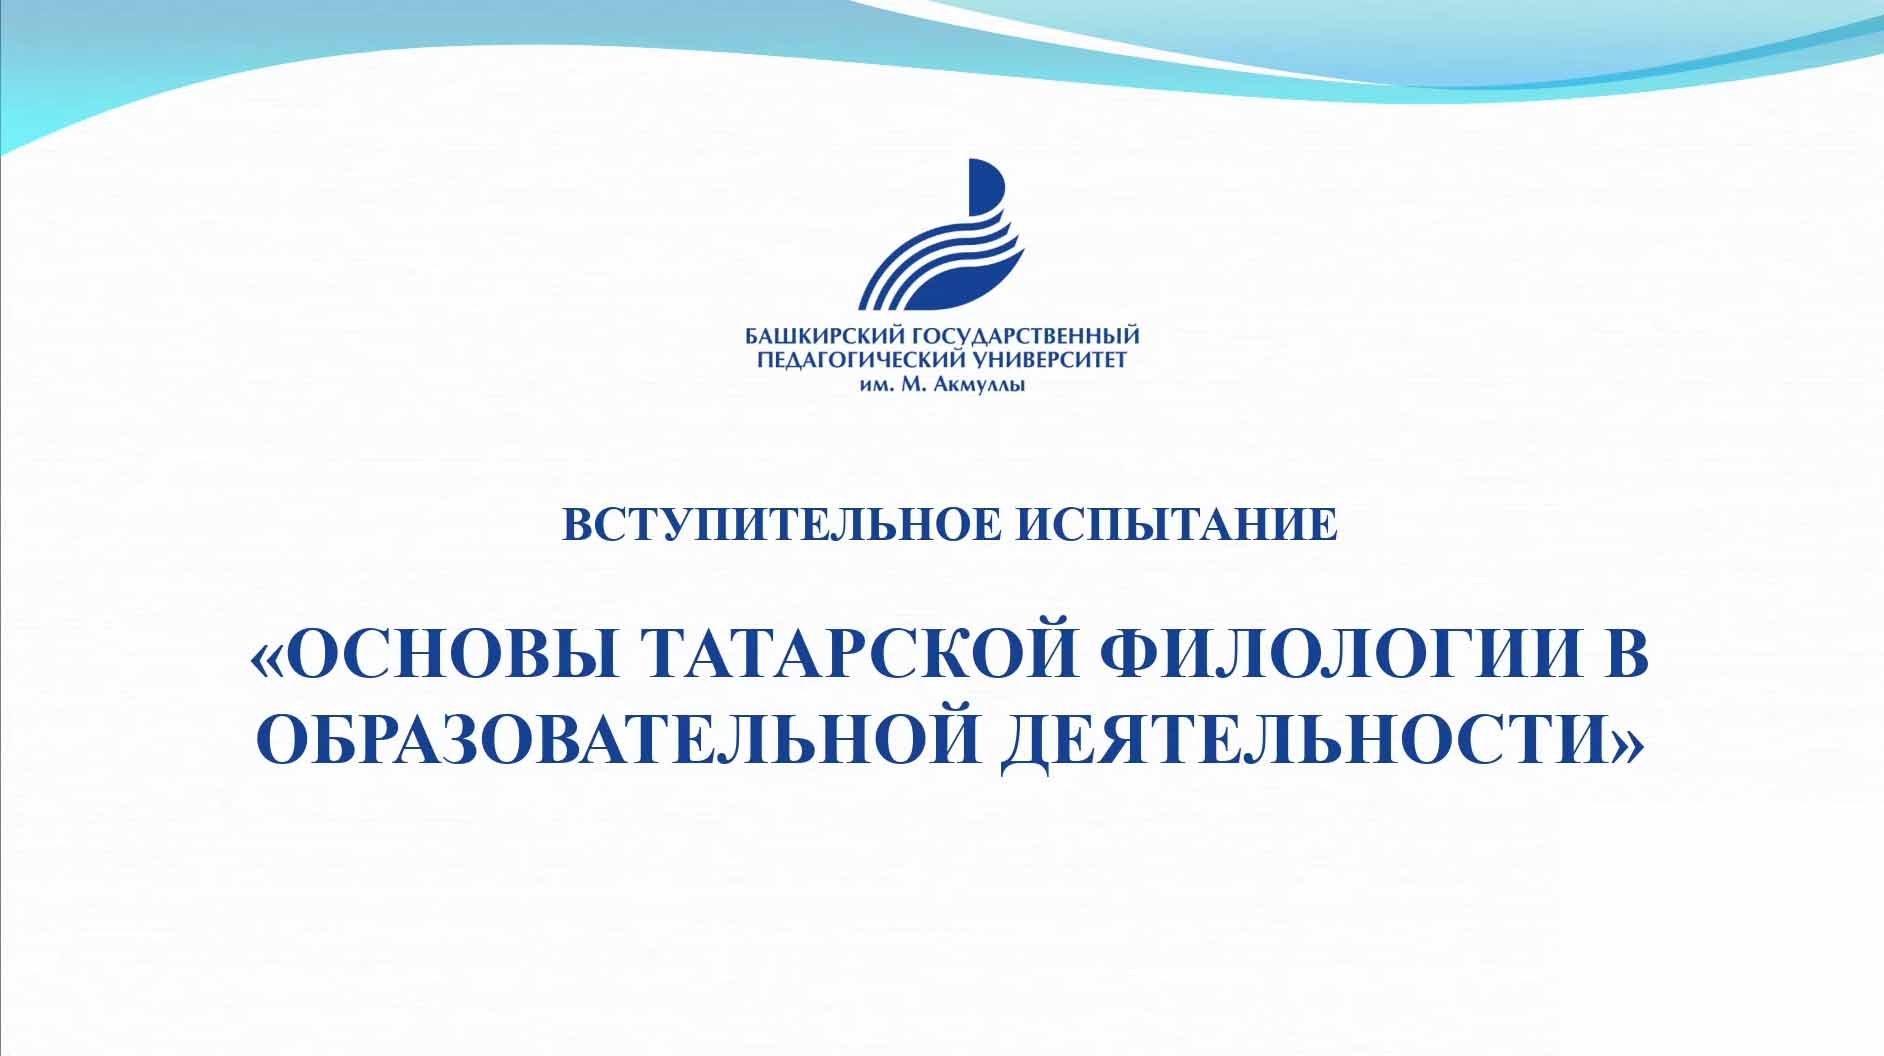 « Основы татарской филологии в образовательной деятельности»